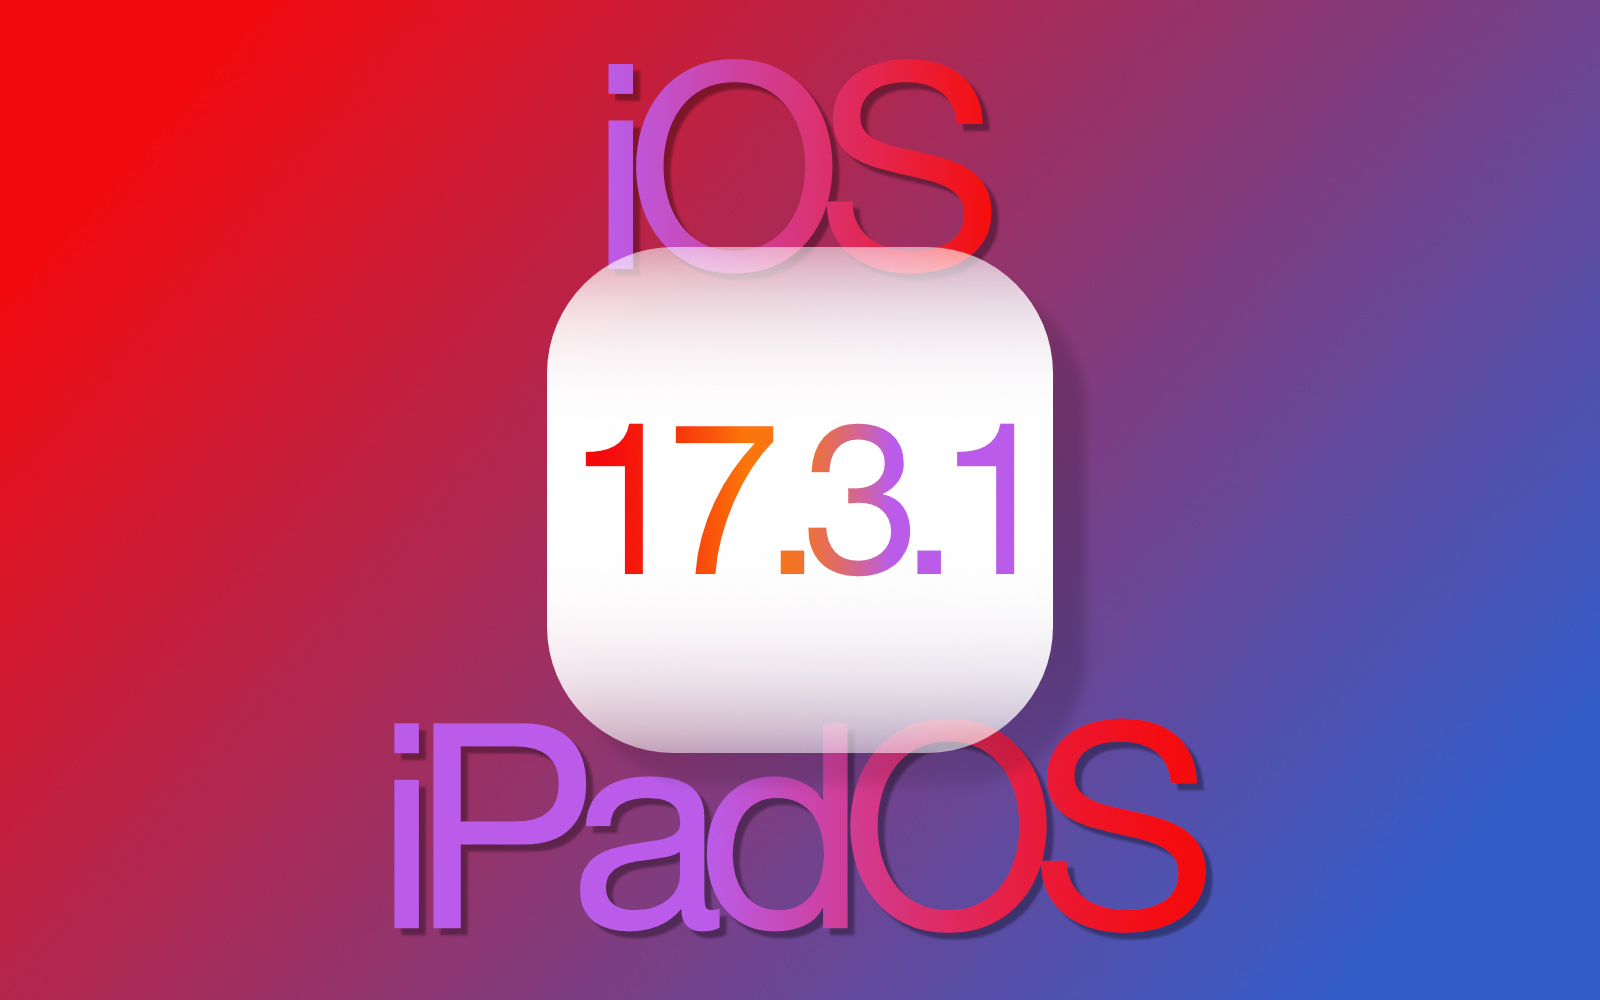 ios-ipados_17_3_1-update-release.jpg